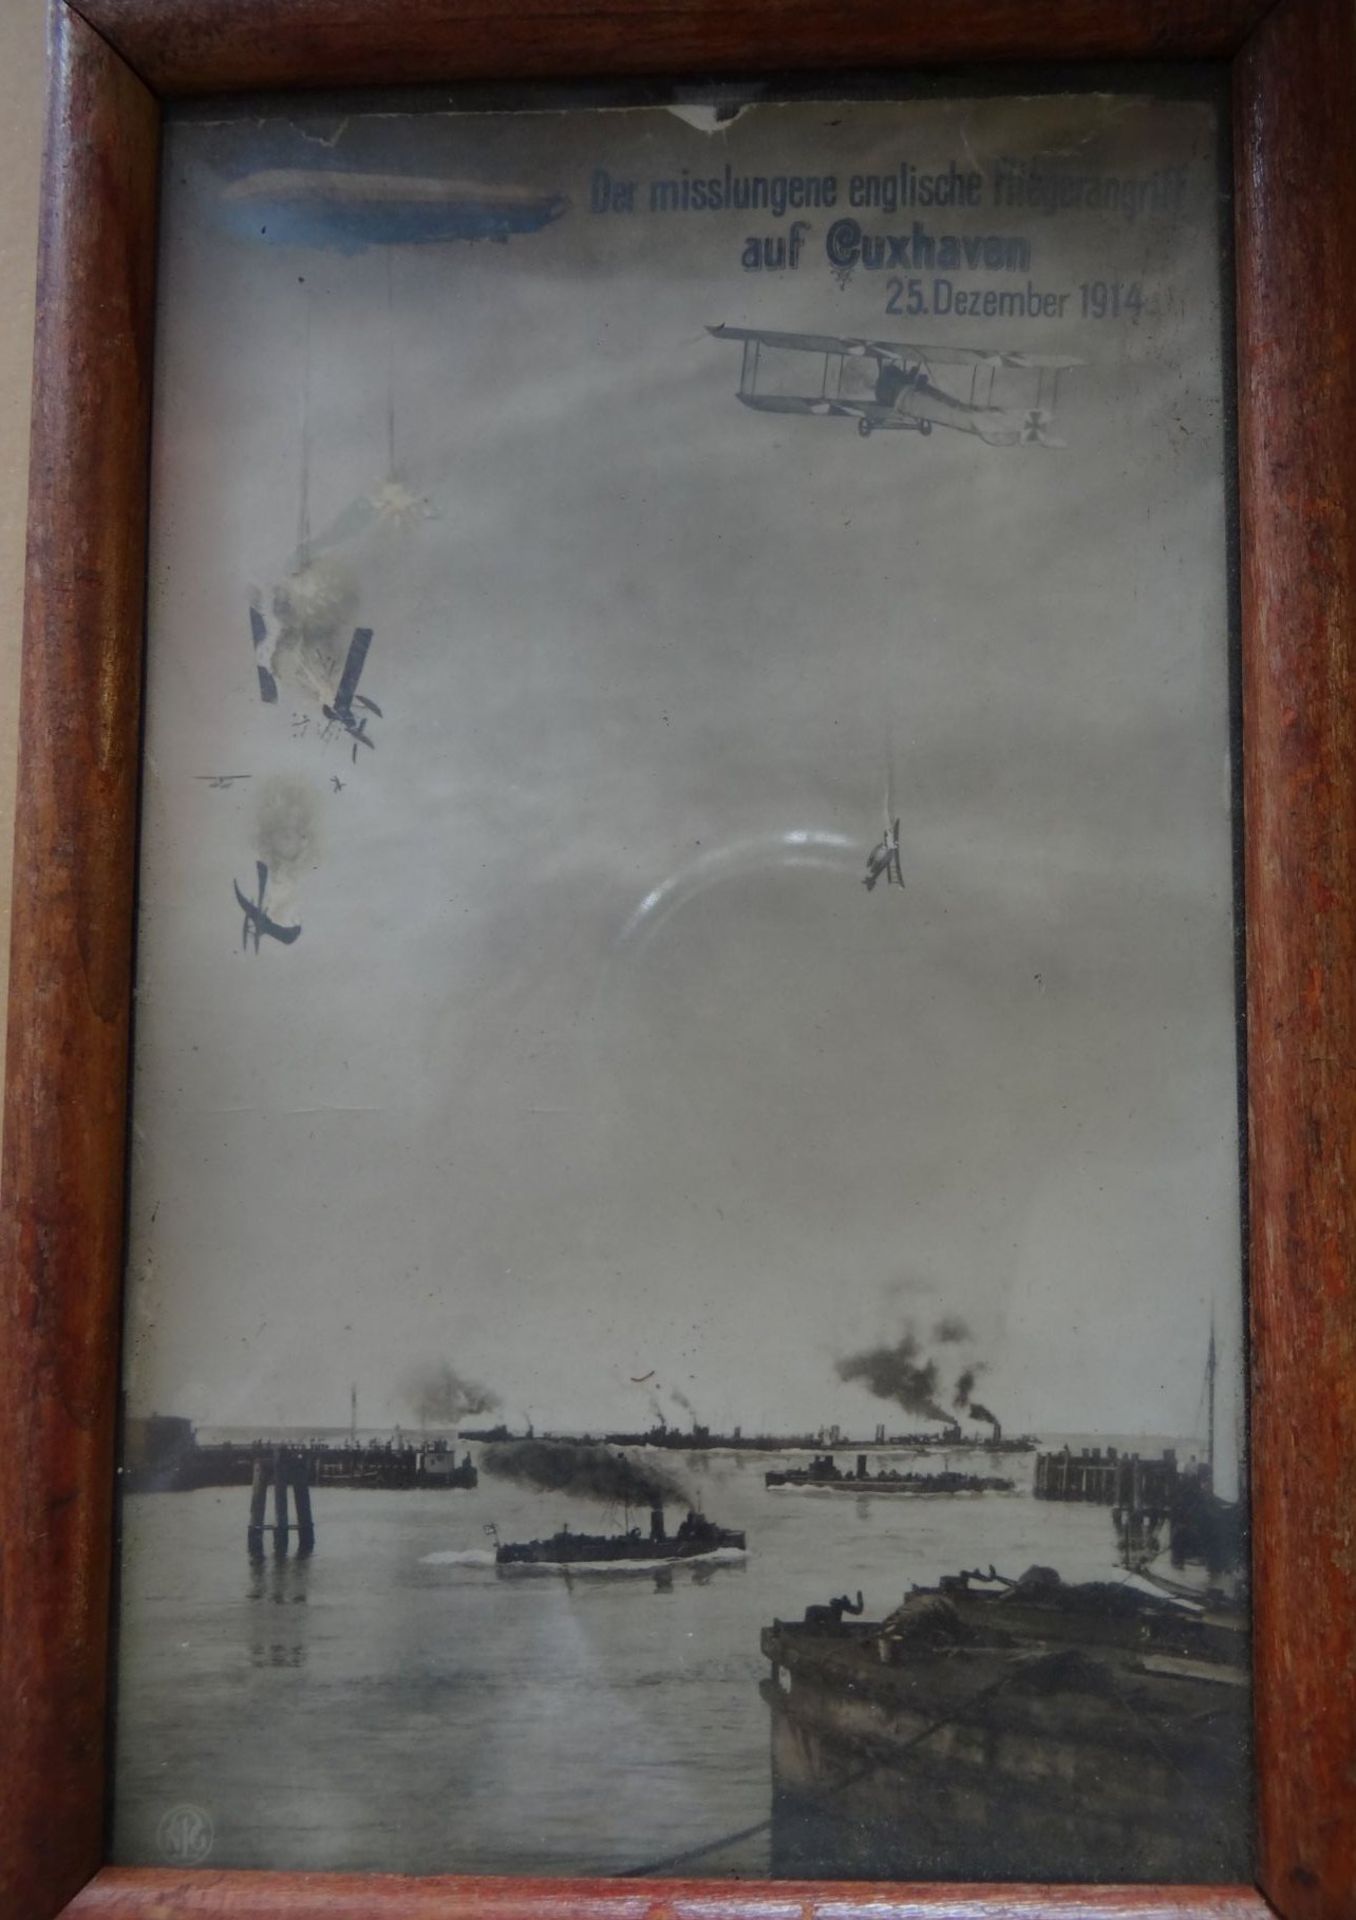 Propaganda-Postkarte "Der misslungene englische Flieger-Angriff auf Cuxhaven" 1914, ger/Glas, RG